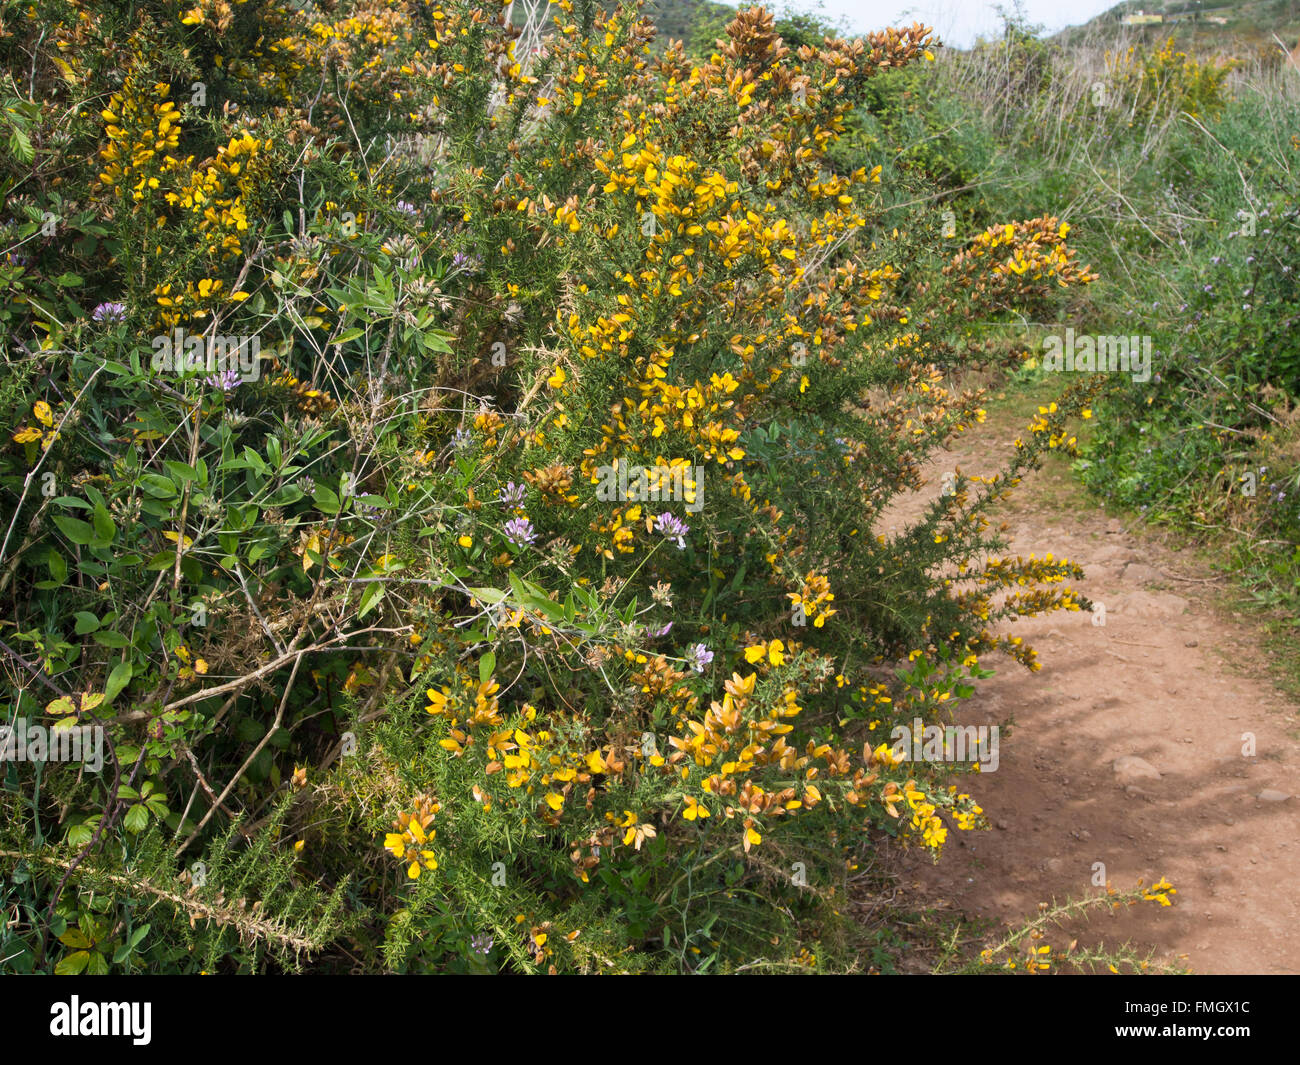 Sentier avec l'ajonc, pois d'Arabie et de la végétation luxuriante autour de 'Charcas del Erjos' Tenerife Espagne Banque D'Images